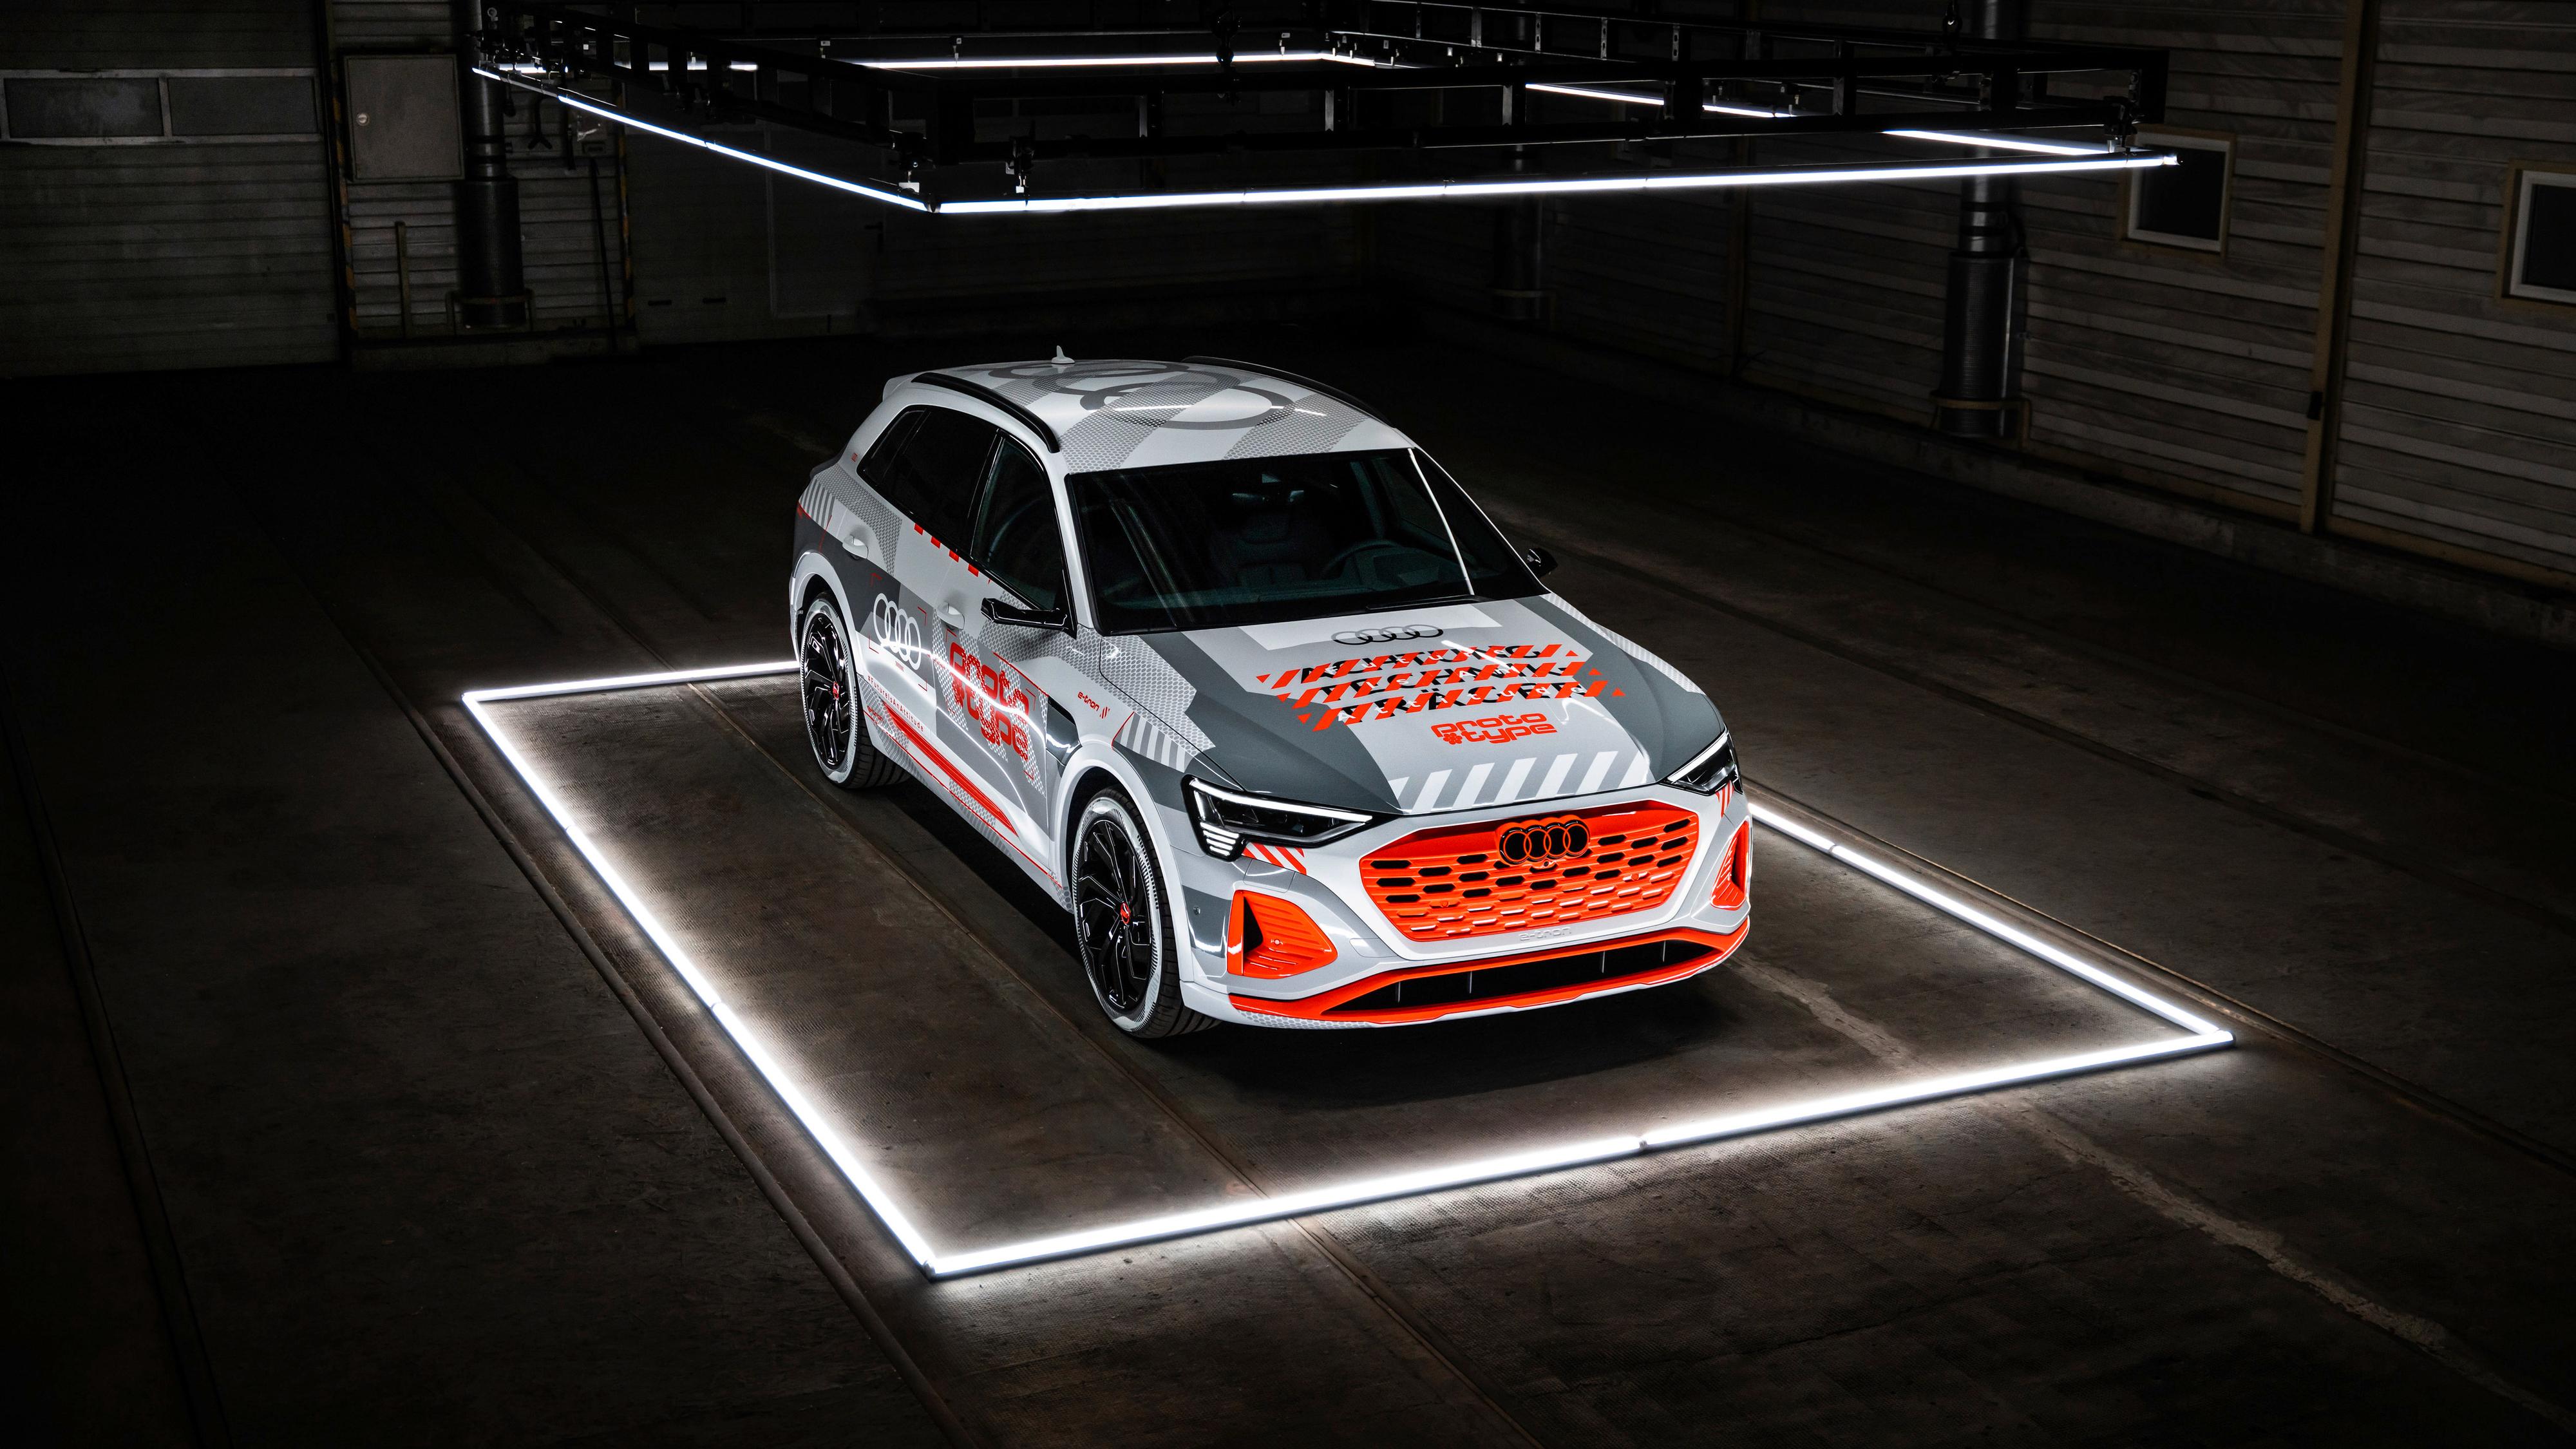 Audi begynner jobben med å tromme opp oppmerksomhet rundt sin nye e-tron-modell. Den skal komme senere i år, og her er det første offisielle bildet. 